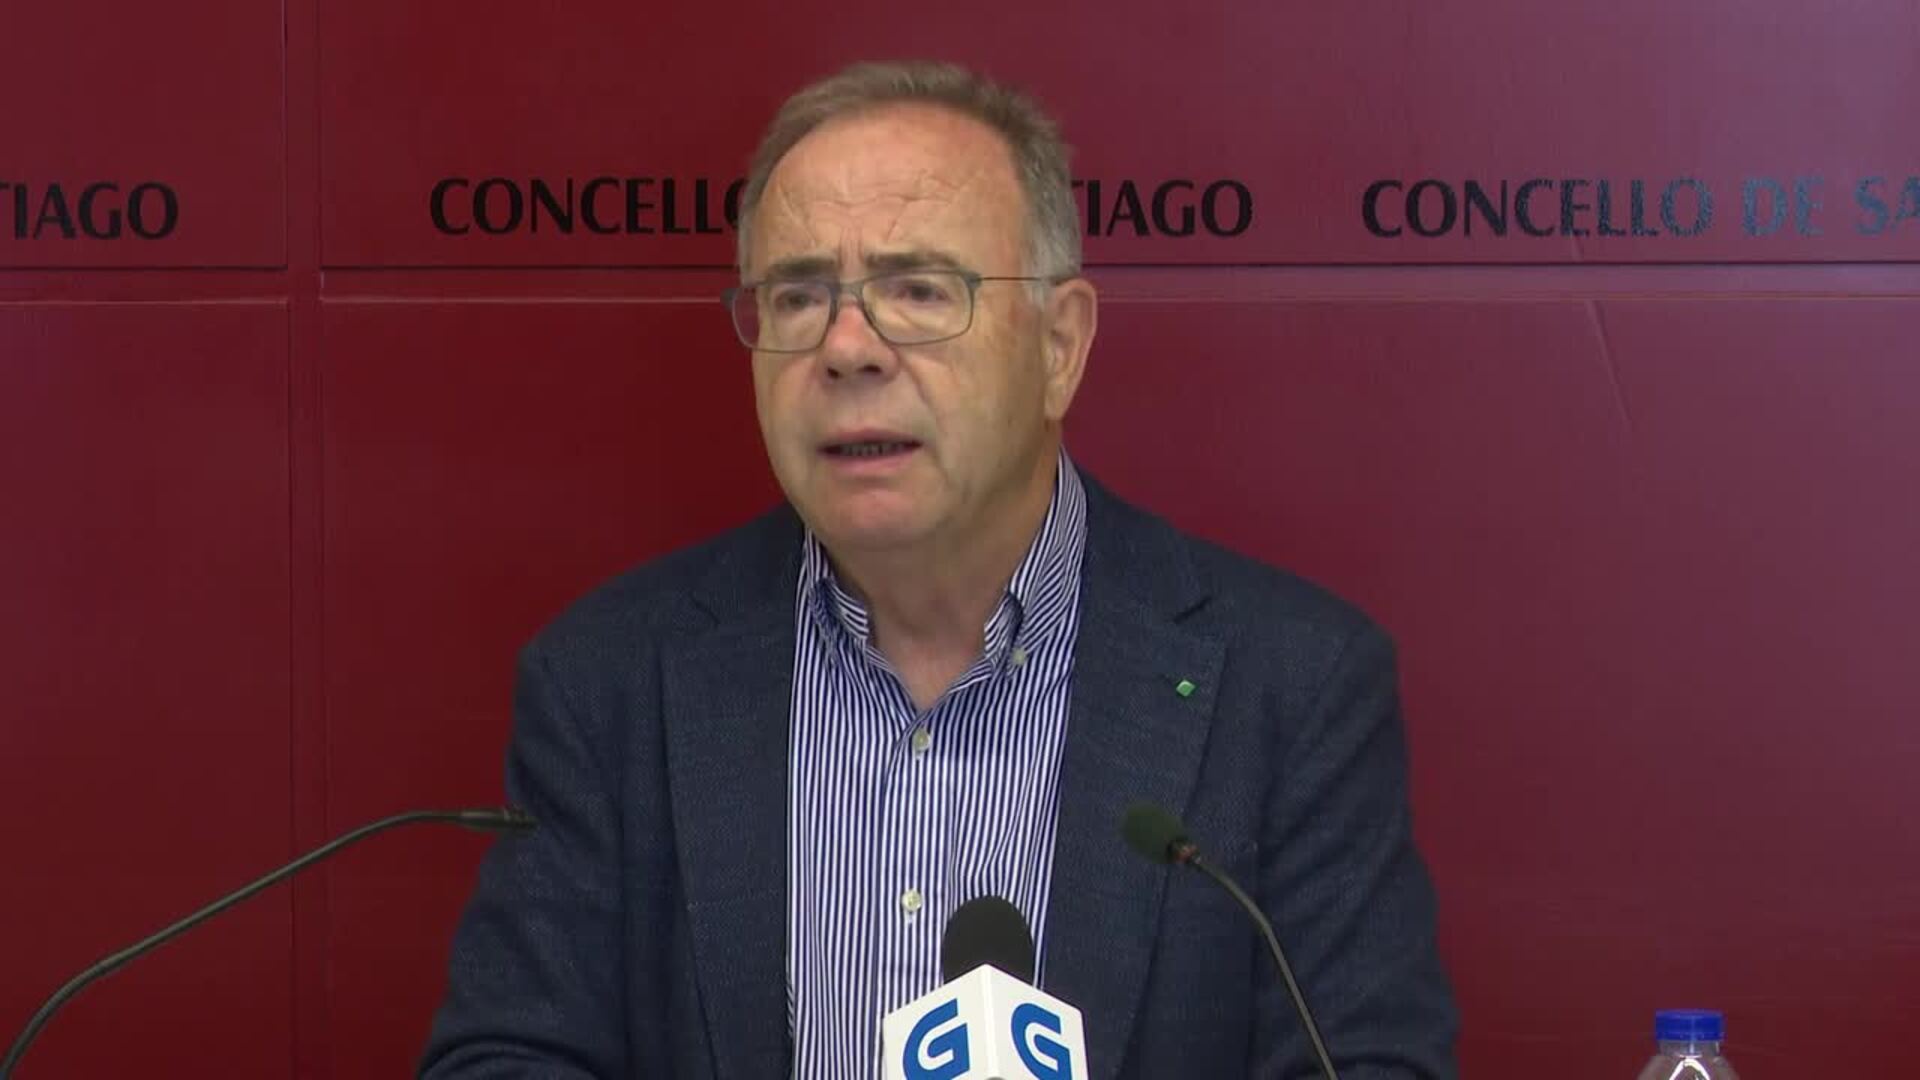 Bugallo cree que Sánchez busca ahorrar "meses de confrontación política" adelantando elecciones